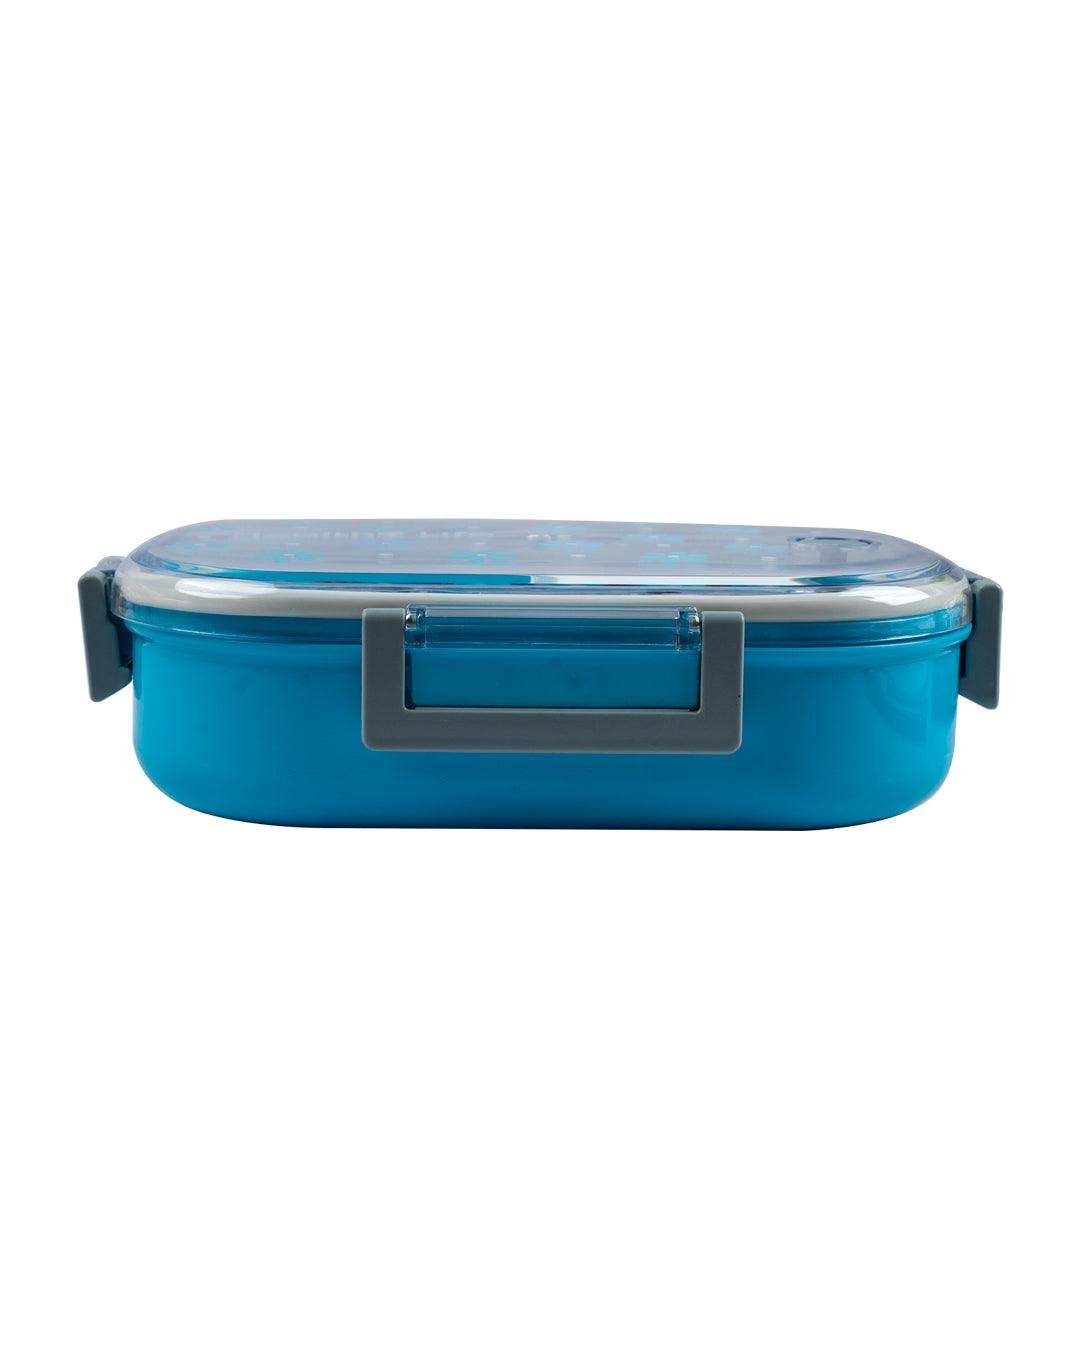 Lunch Box, Floral Print, Blue, Plastic - MARKET 99